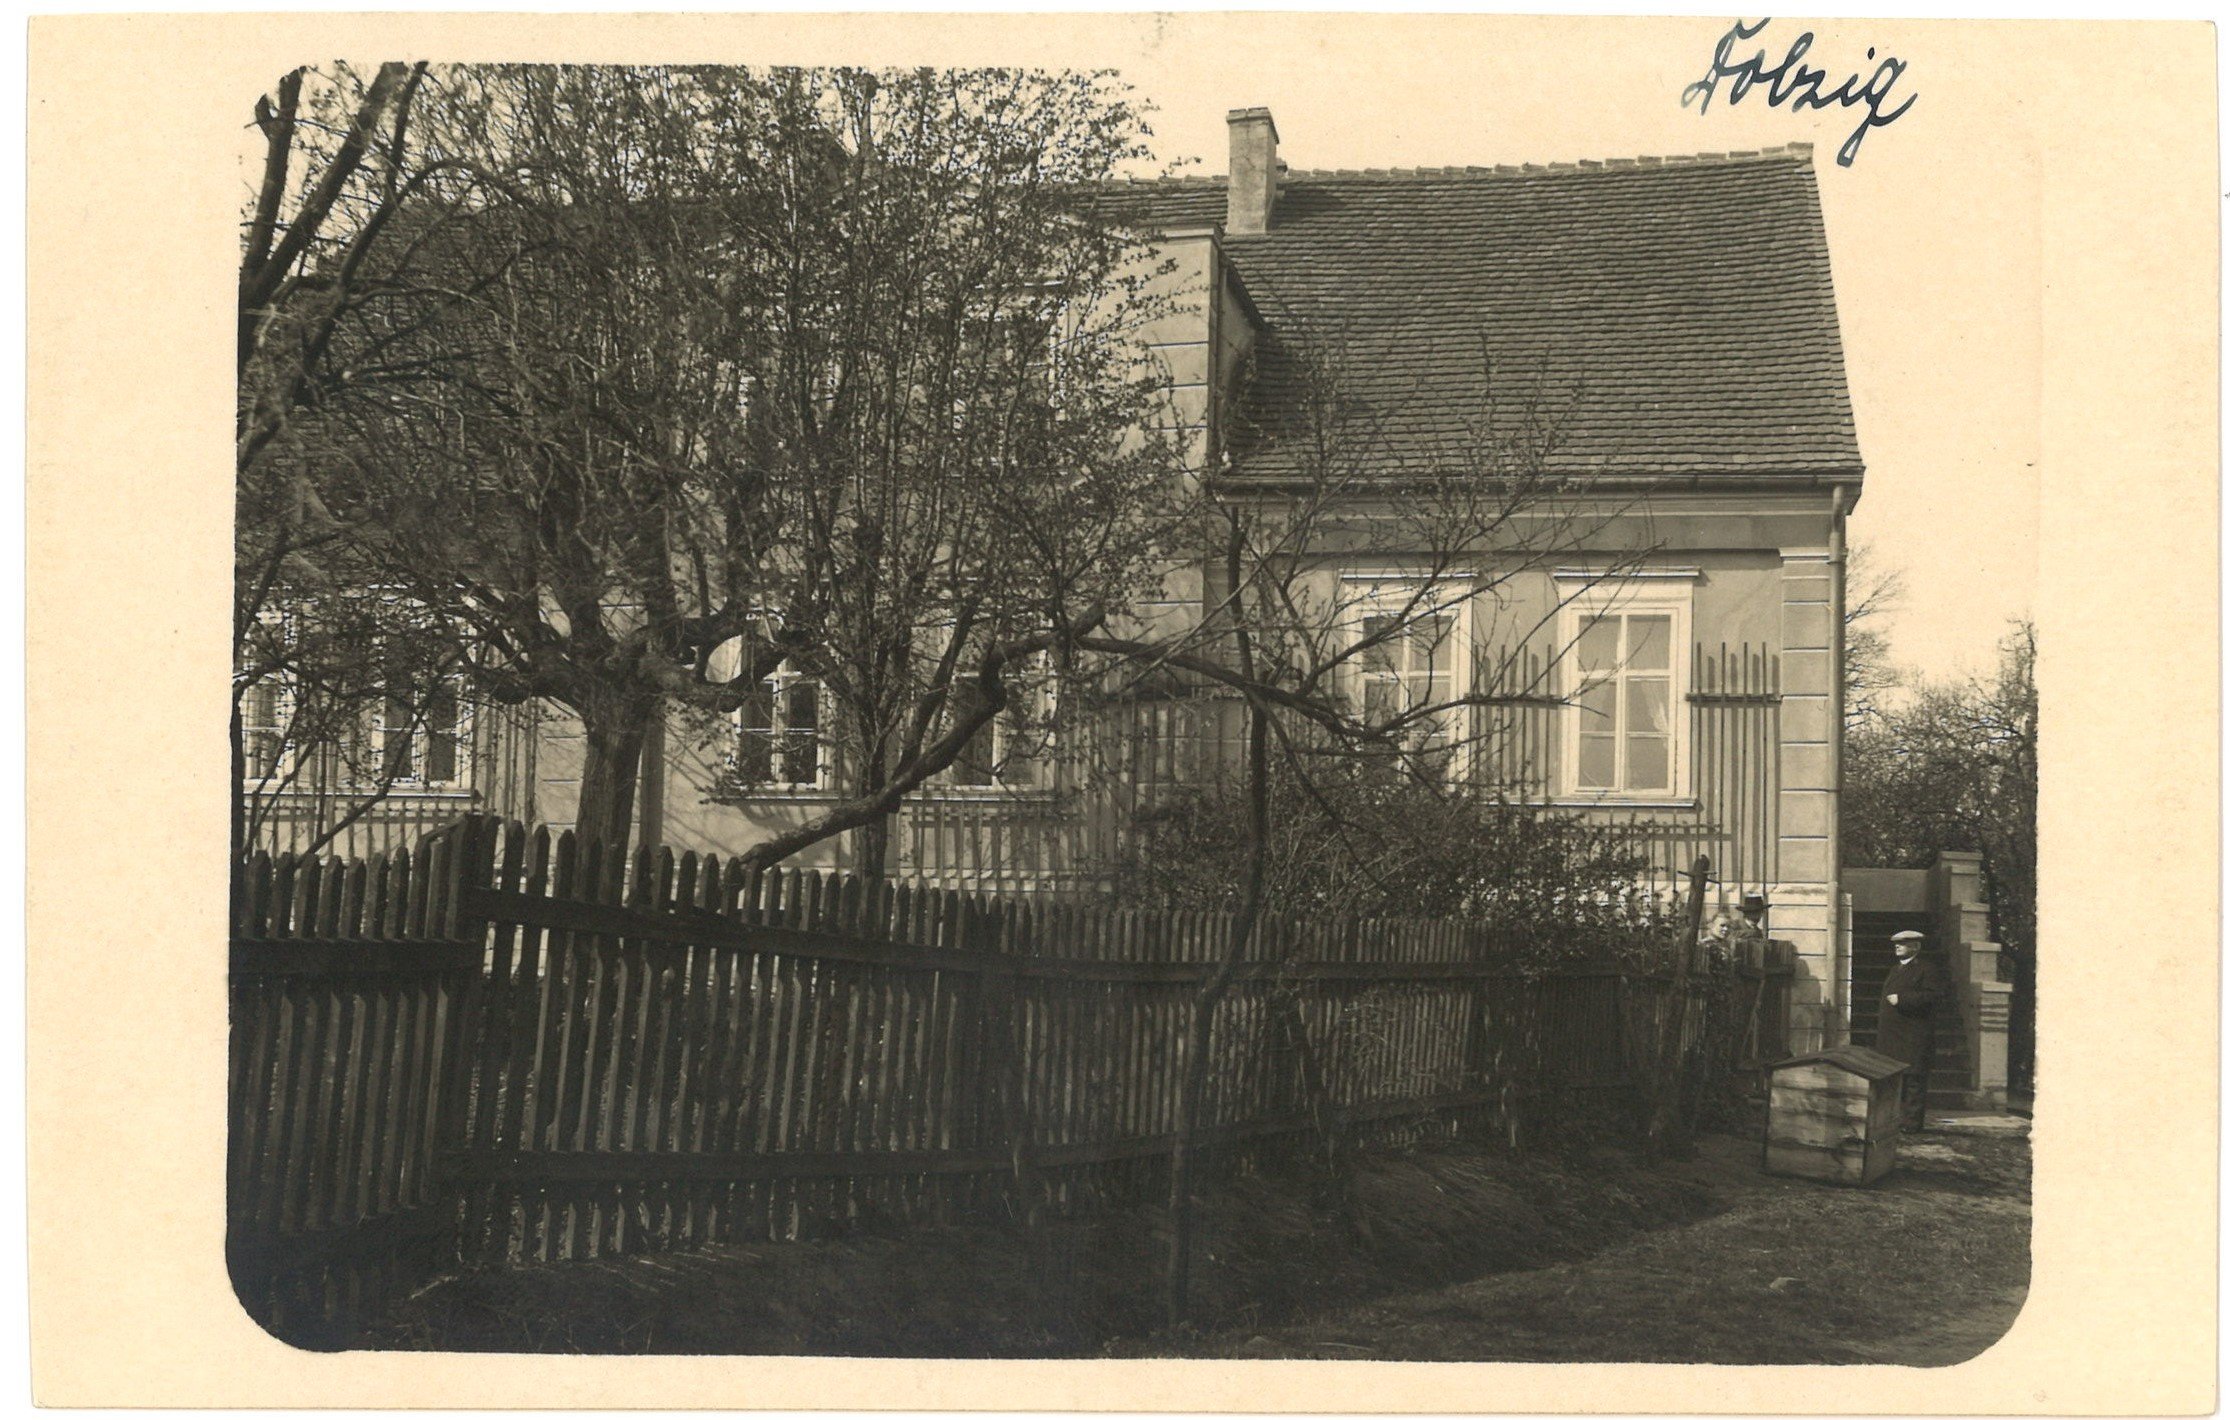 Dolzig (Kr. Sorau) / Dłużek: Pfarrhaus (Landesgeschichtliche Vereinigung für die Mark Brandenburg e.V., Archiv CC BY)